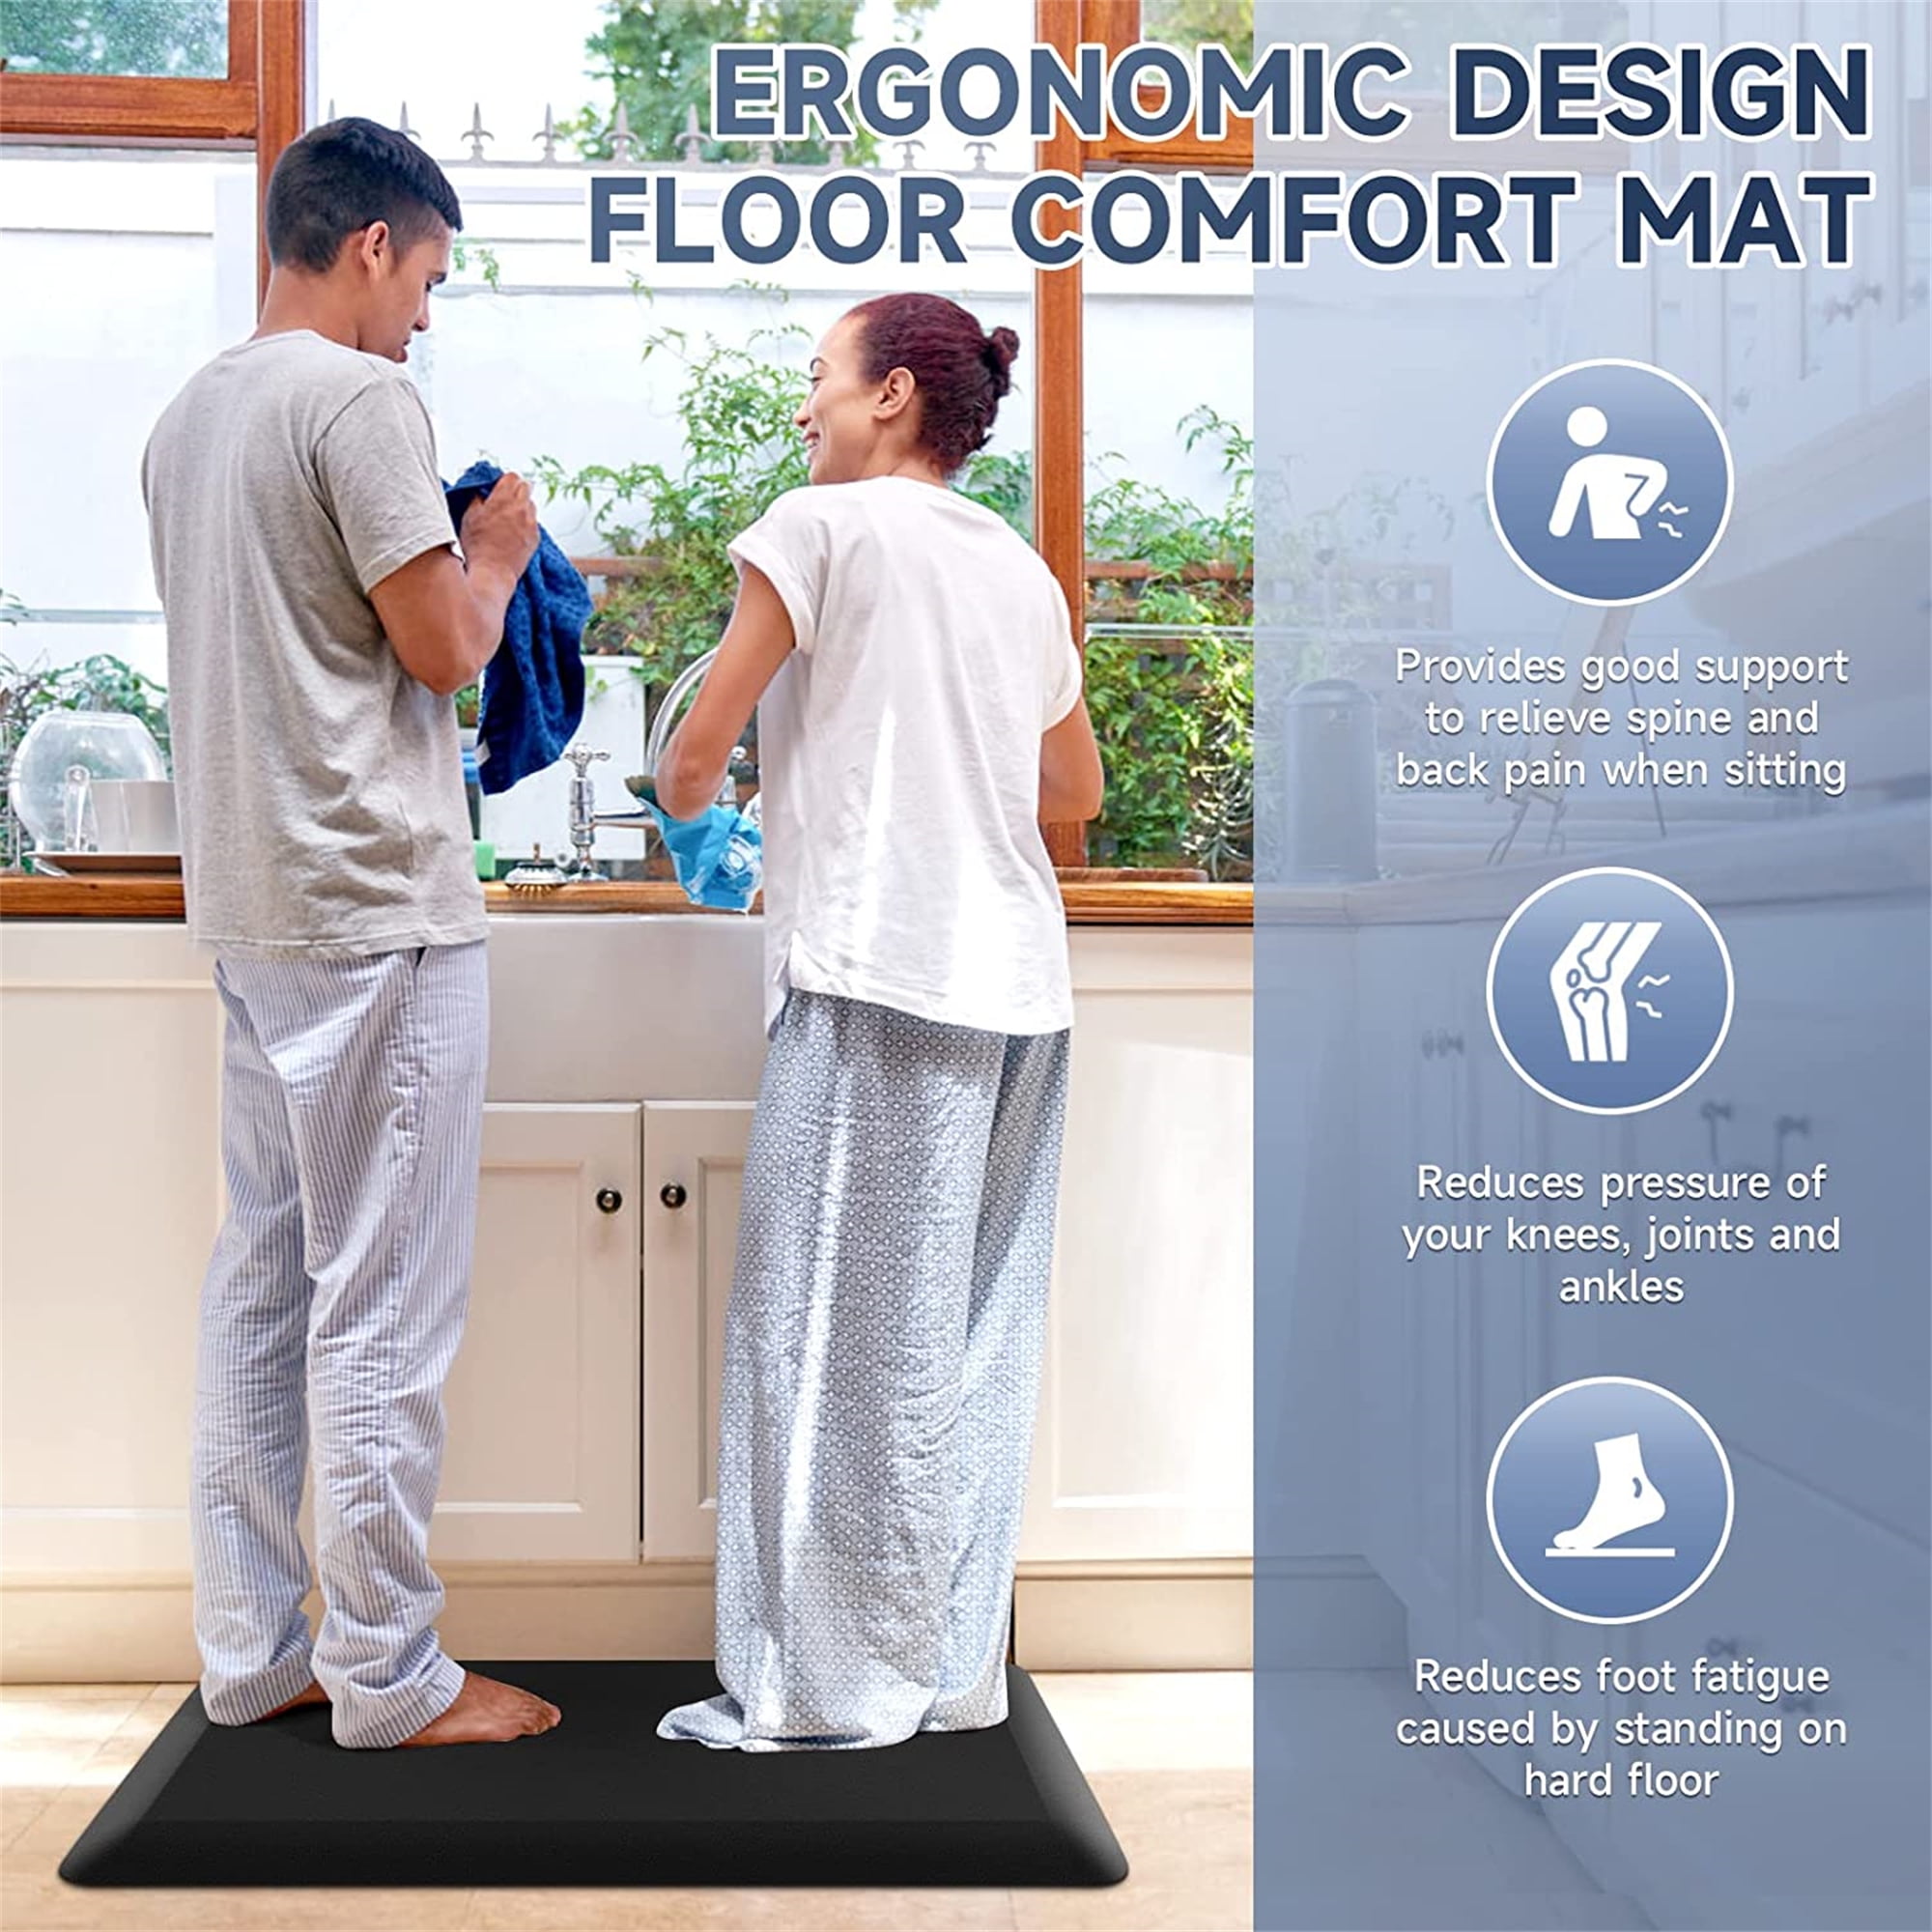 HEALEG 1 Extra Thick Anti Fatigue Floor Mat,Kitchen Mat, Standing Desk Mat  – Comfort at Home, Office, Garage - Advanced PU Foam - NOT PVC!!! (Black